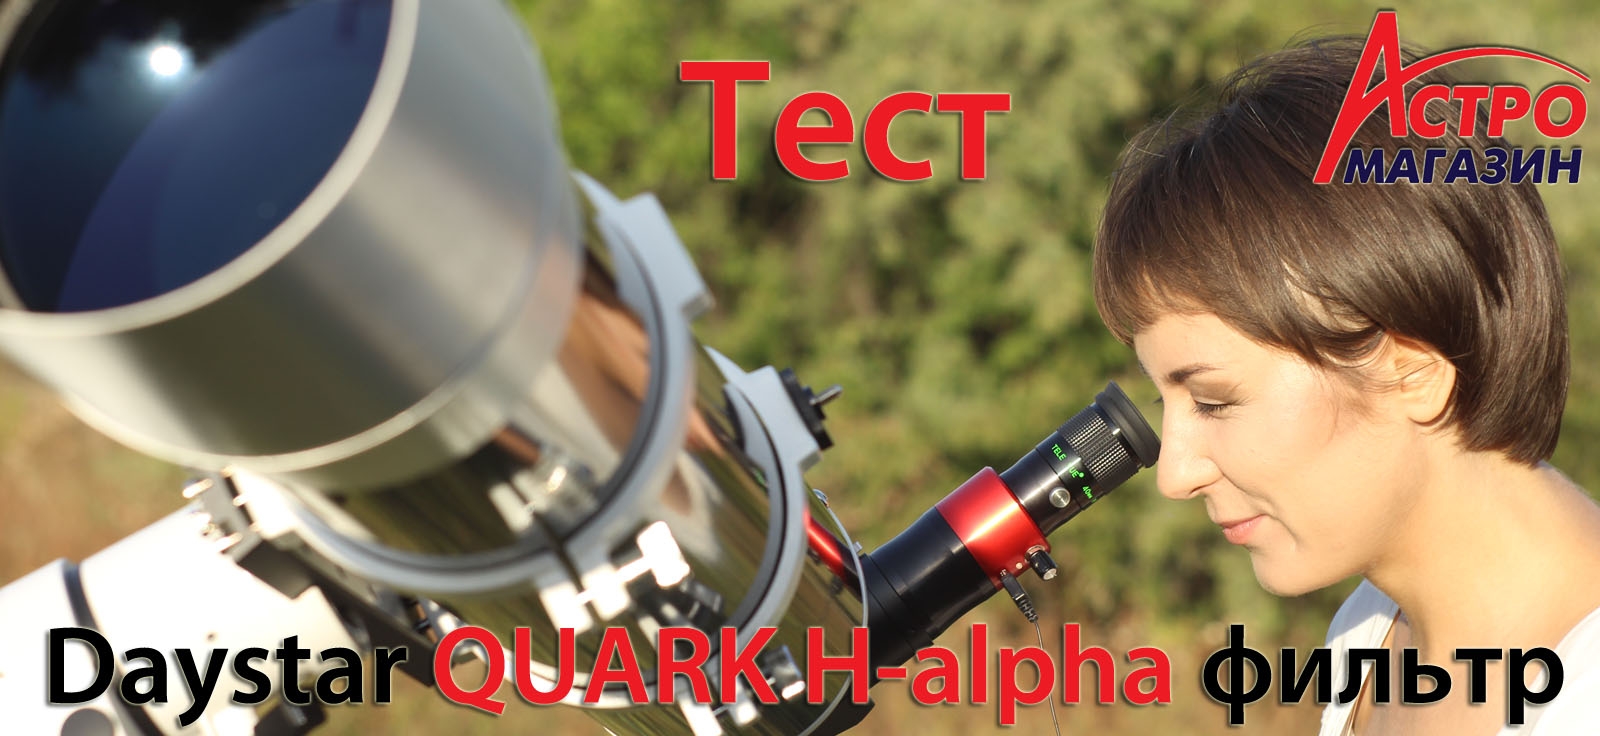 Видео-обзор солнечного H-alpha фильтра Daystar QUARK Prominence